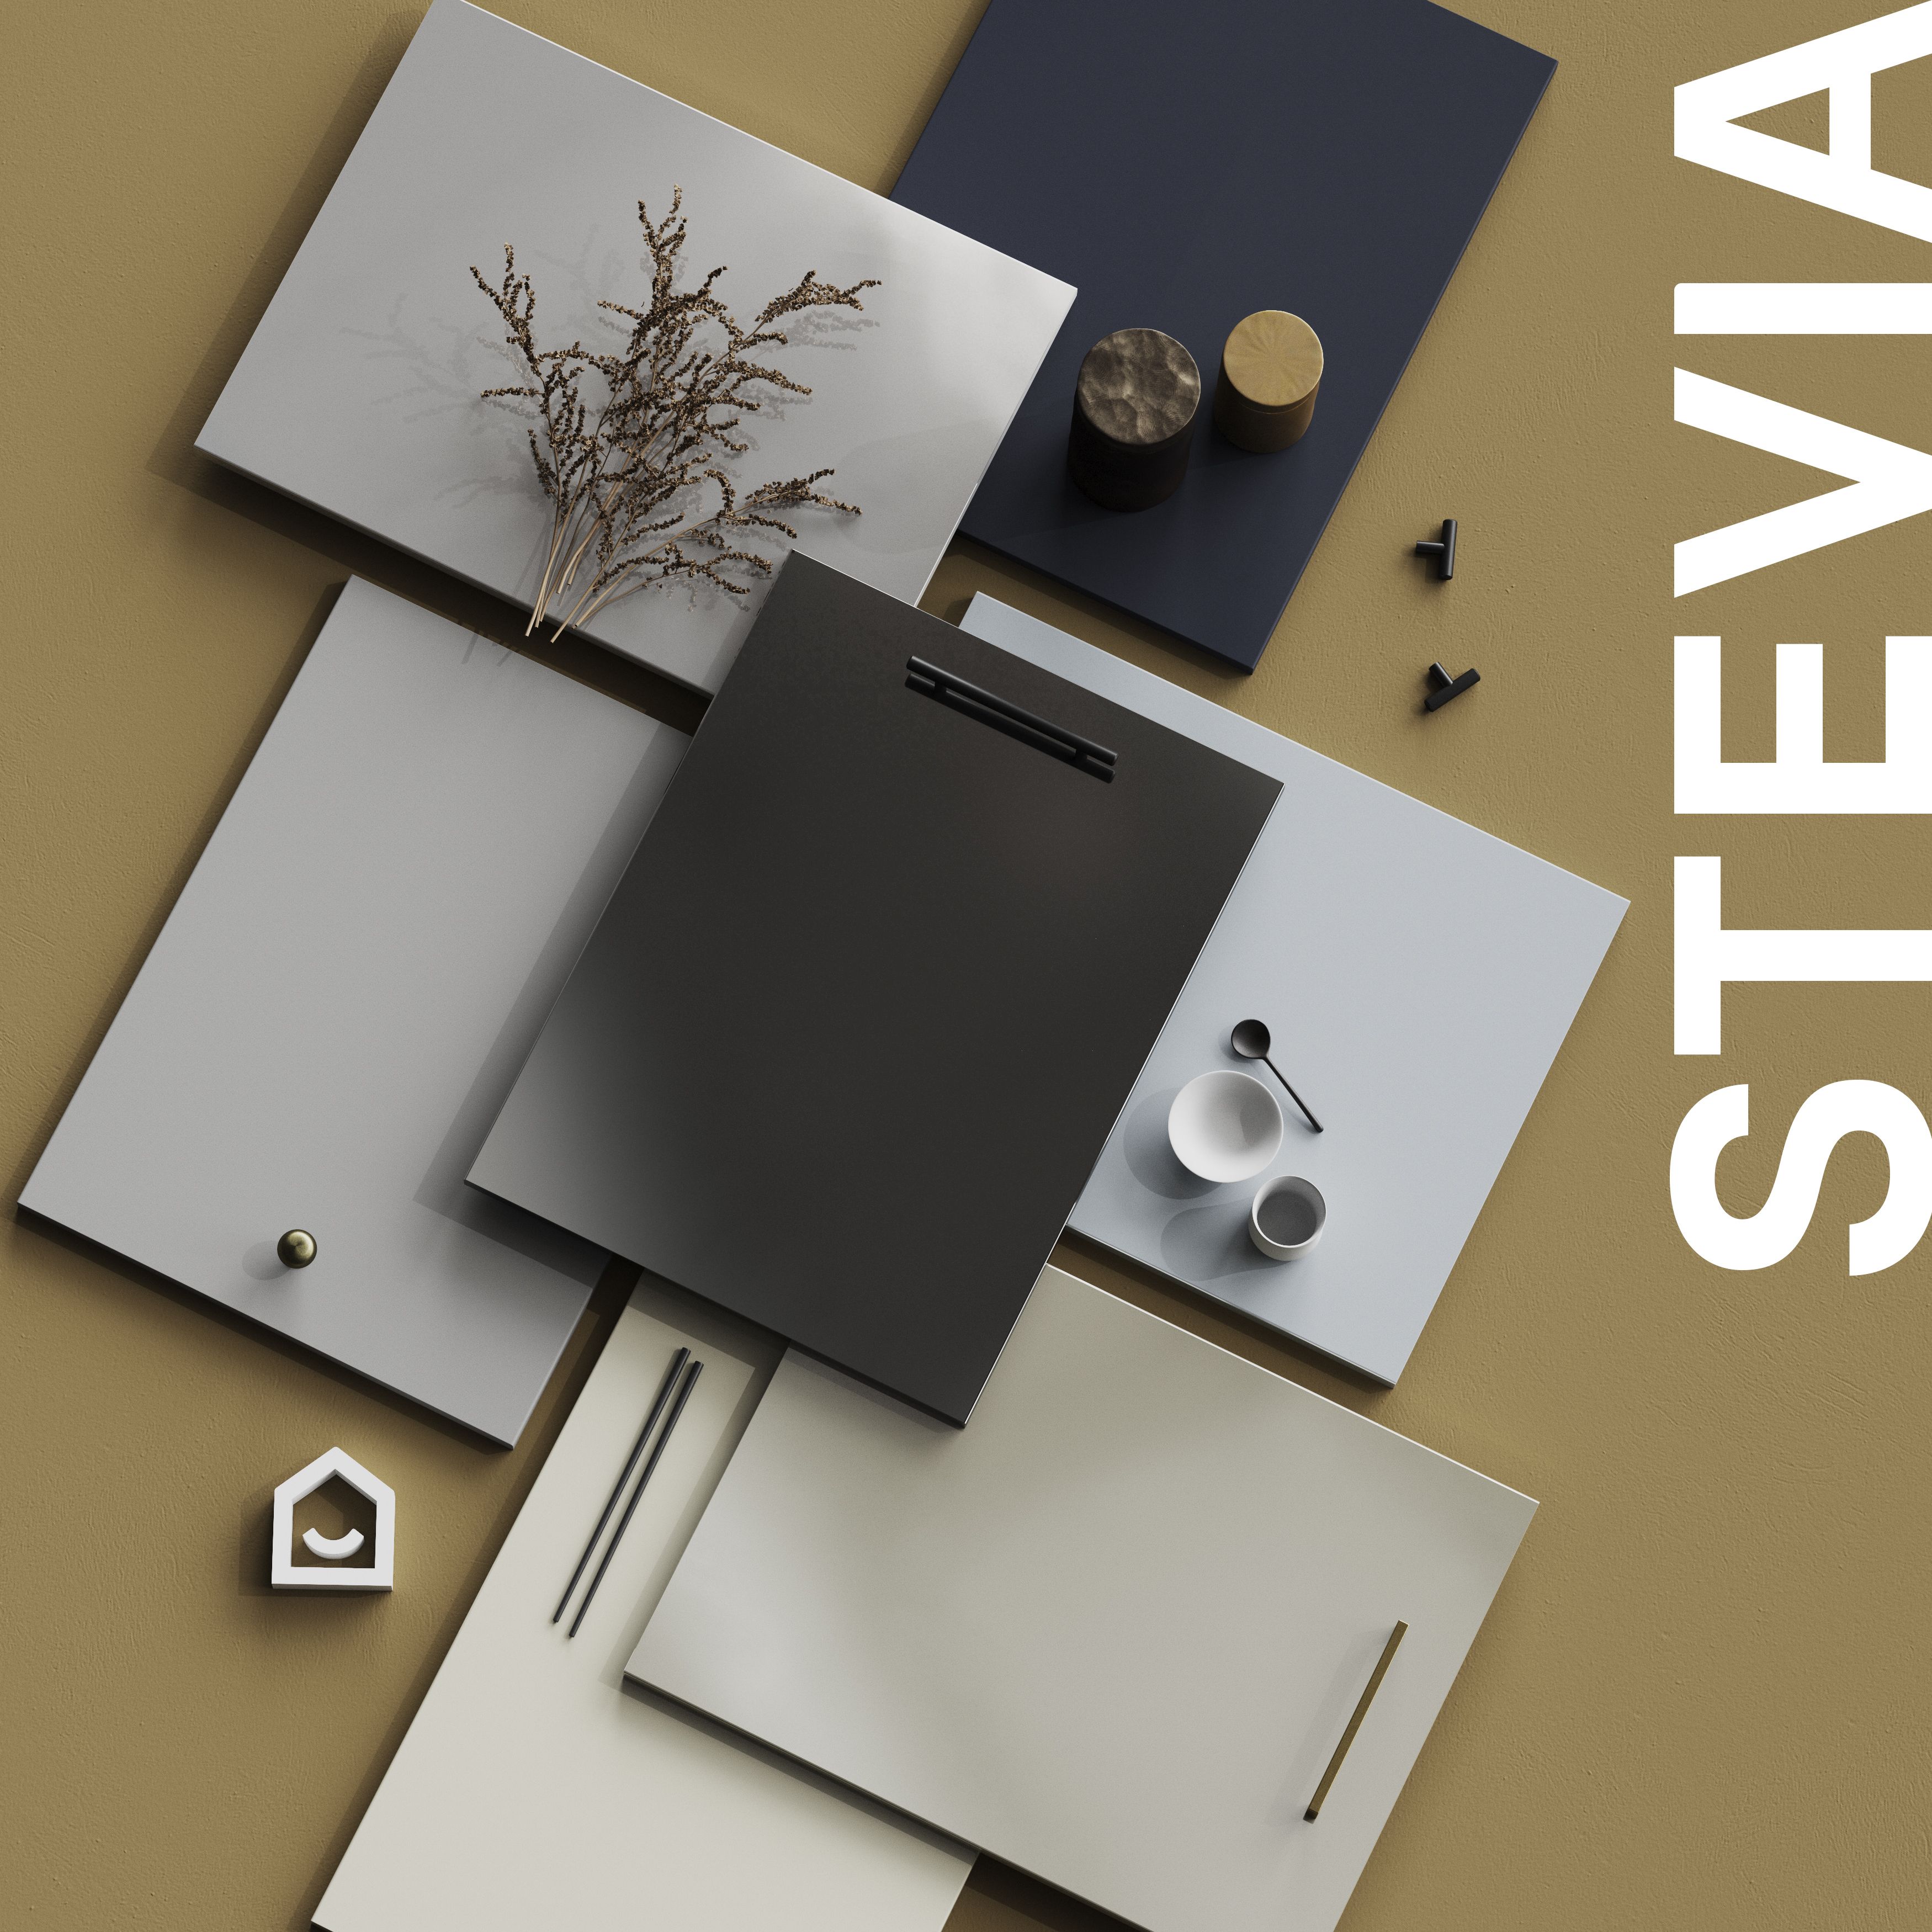 GoodHome Stevia Gloss grey slab 70:30 Larder Cabinet door (W)600mm (H)1287mm (T)18mm